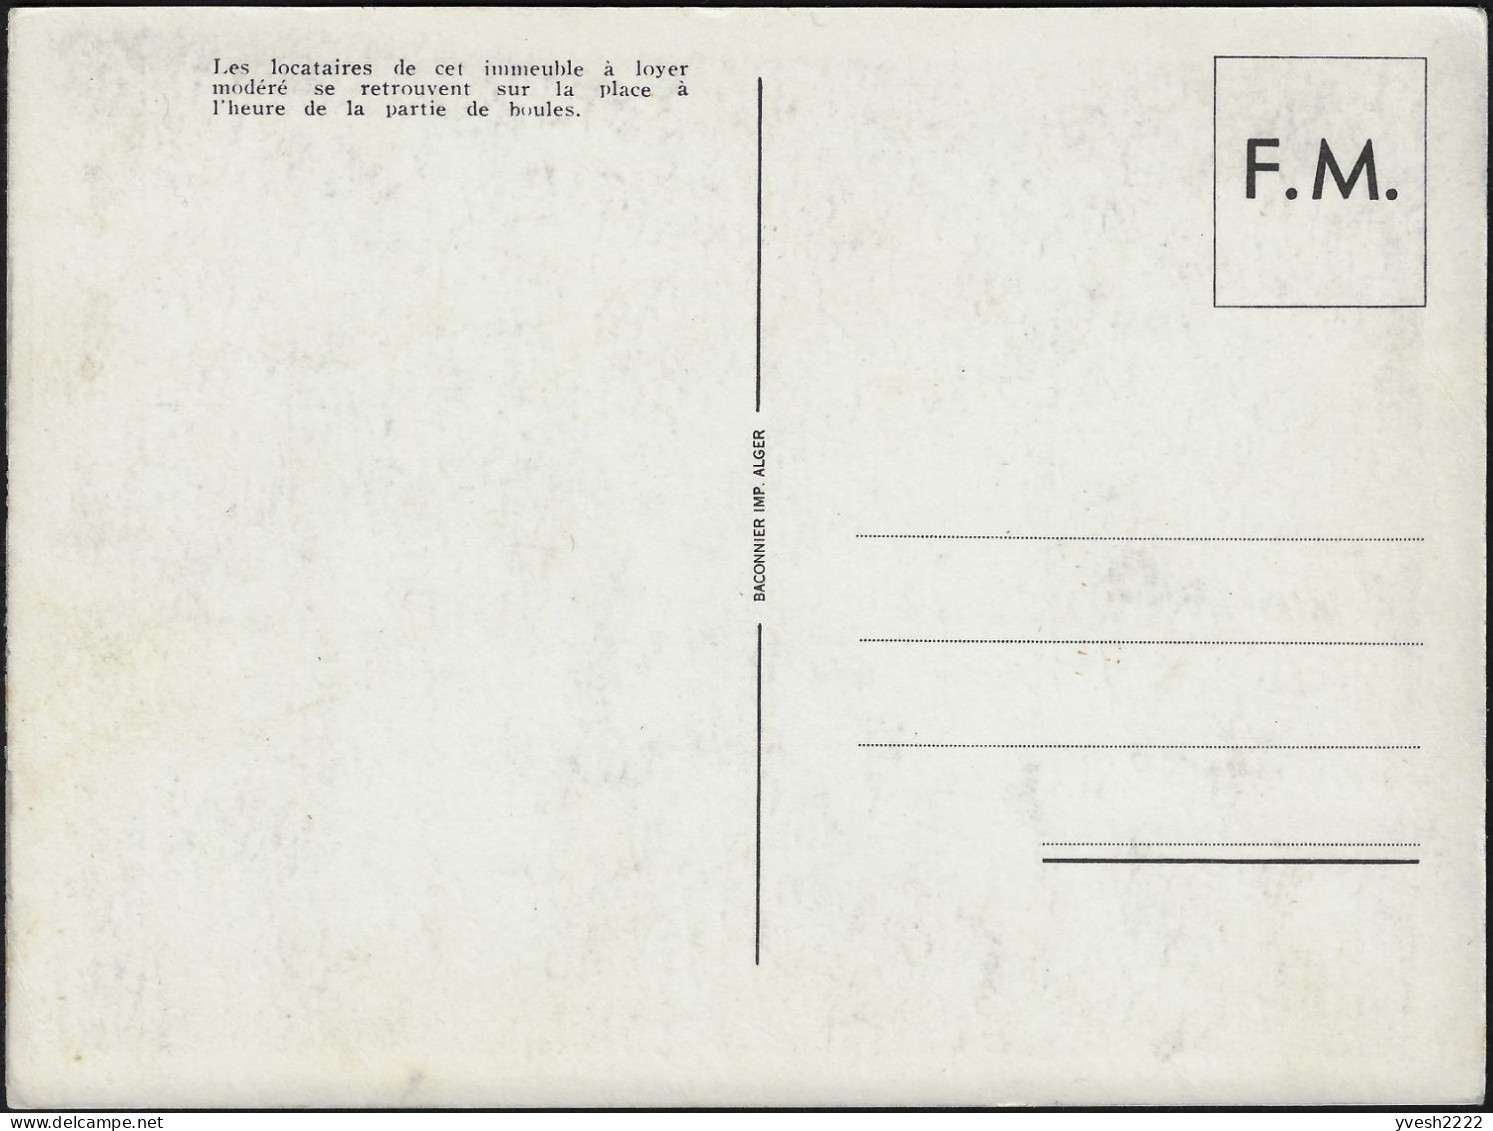 Algérie 1957. Carte Postale De Franchise Militaire. Partie De Boules. Vieux Messieurs Avec Chapeaux Ou Bérets, Palmiers - Bocce